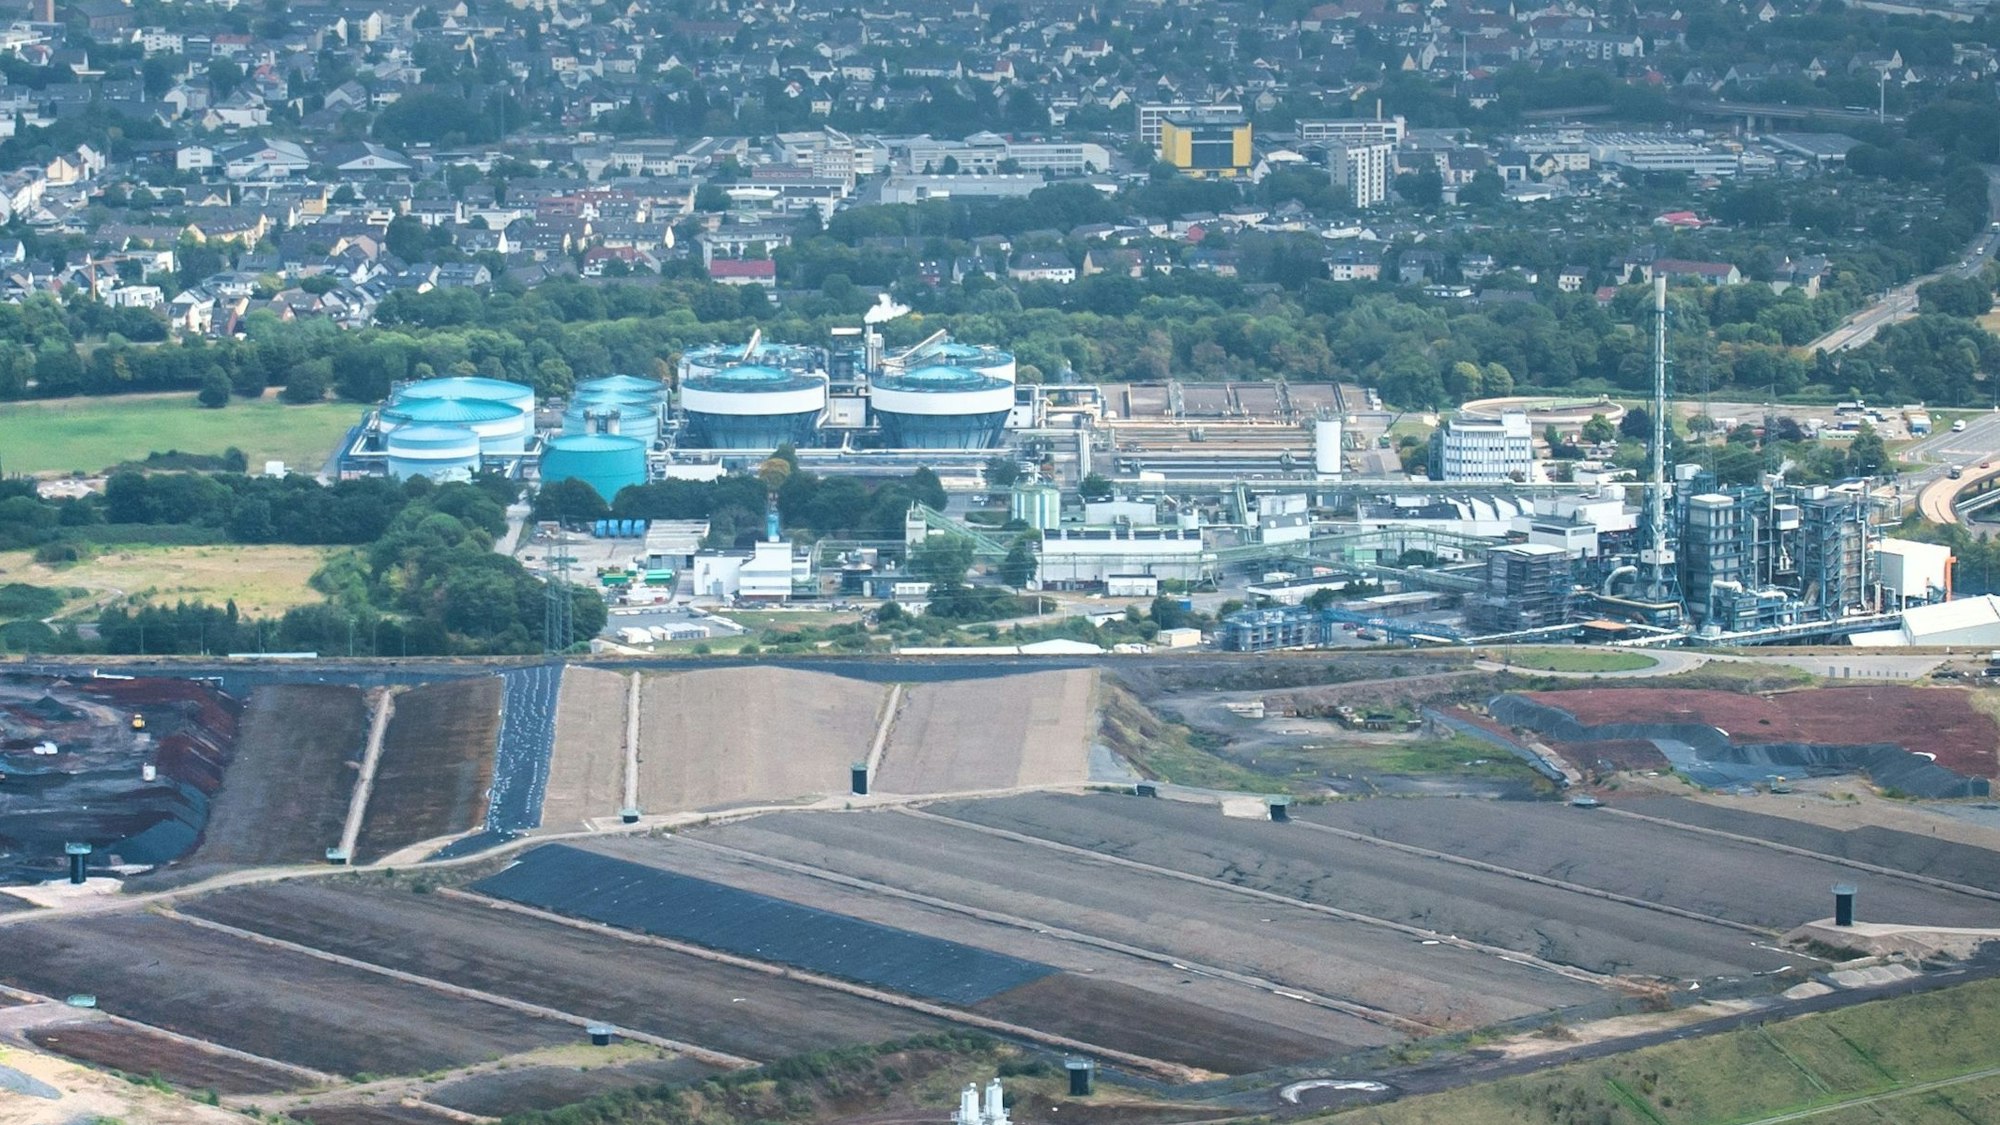 Luftbild des Entsorgungszentrums in Bürrig mit Sondermüllverbrennung, Klärwerk und Deponie.